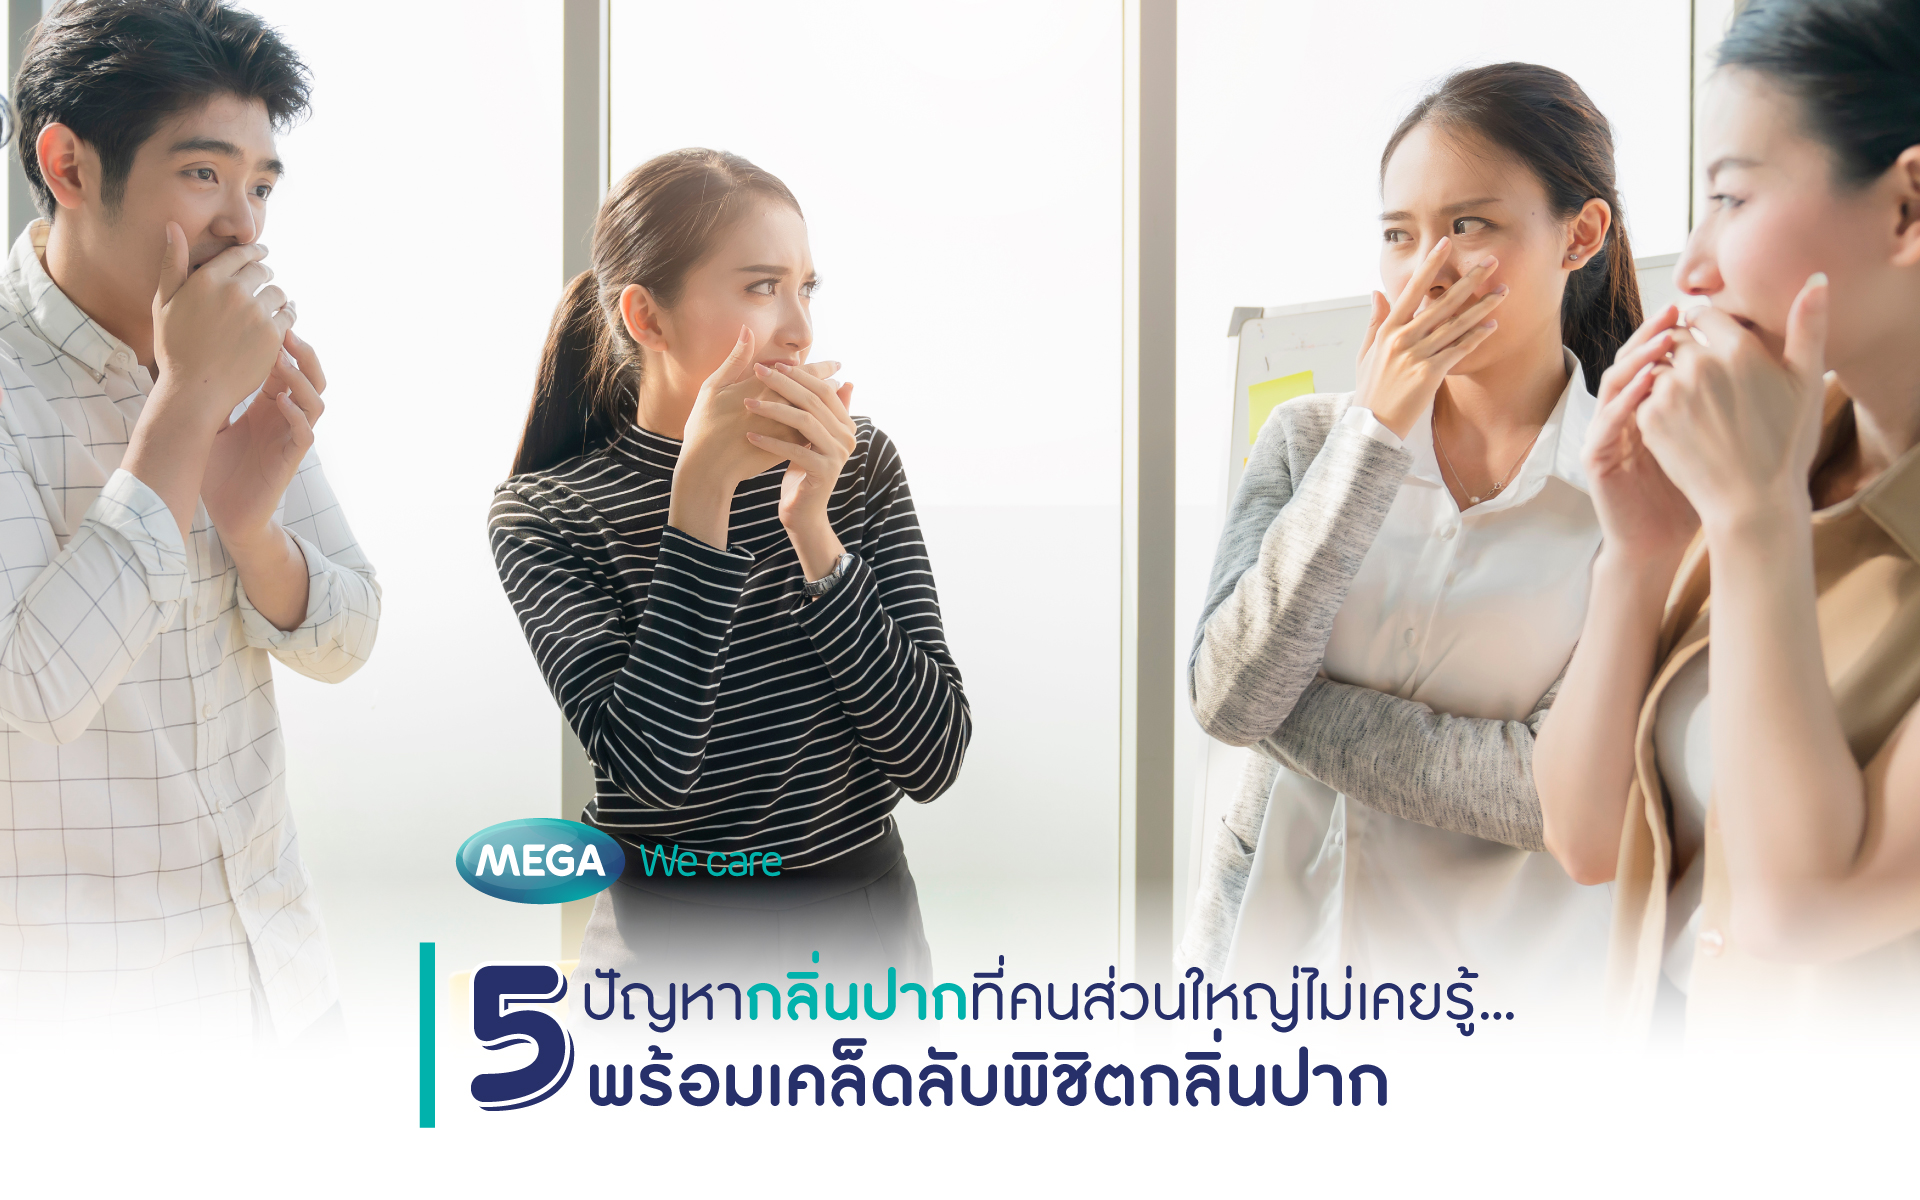 5 ปัญหากลิ่นปากที่คนส่วนใหญ่ไม่เคยรู้... พร้อมเคล็ดลับพิชิตกลิ่น